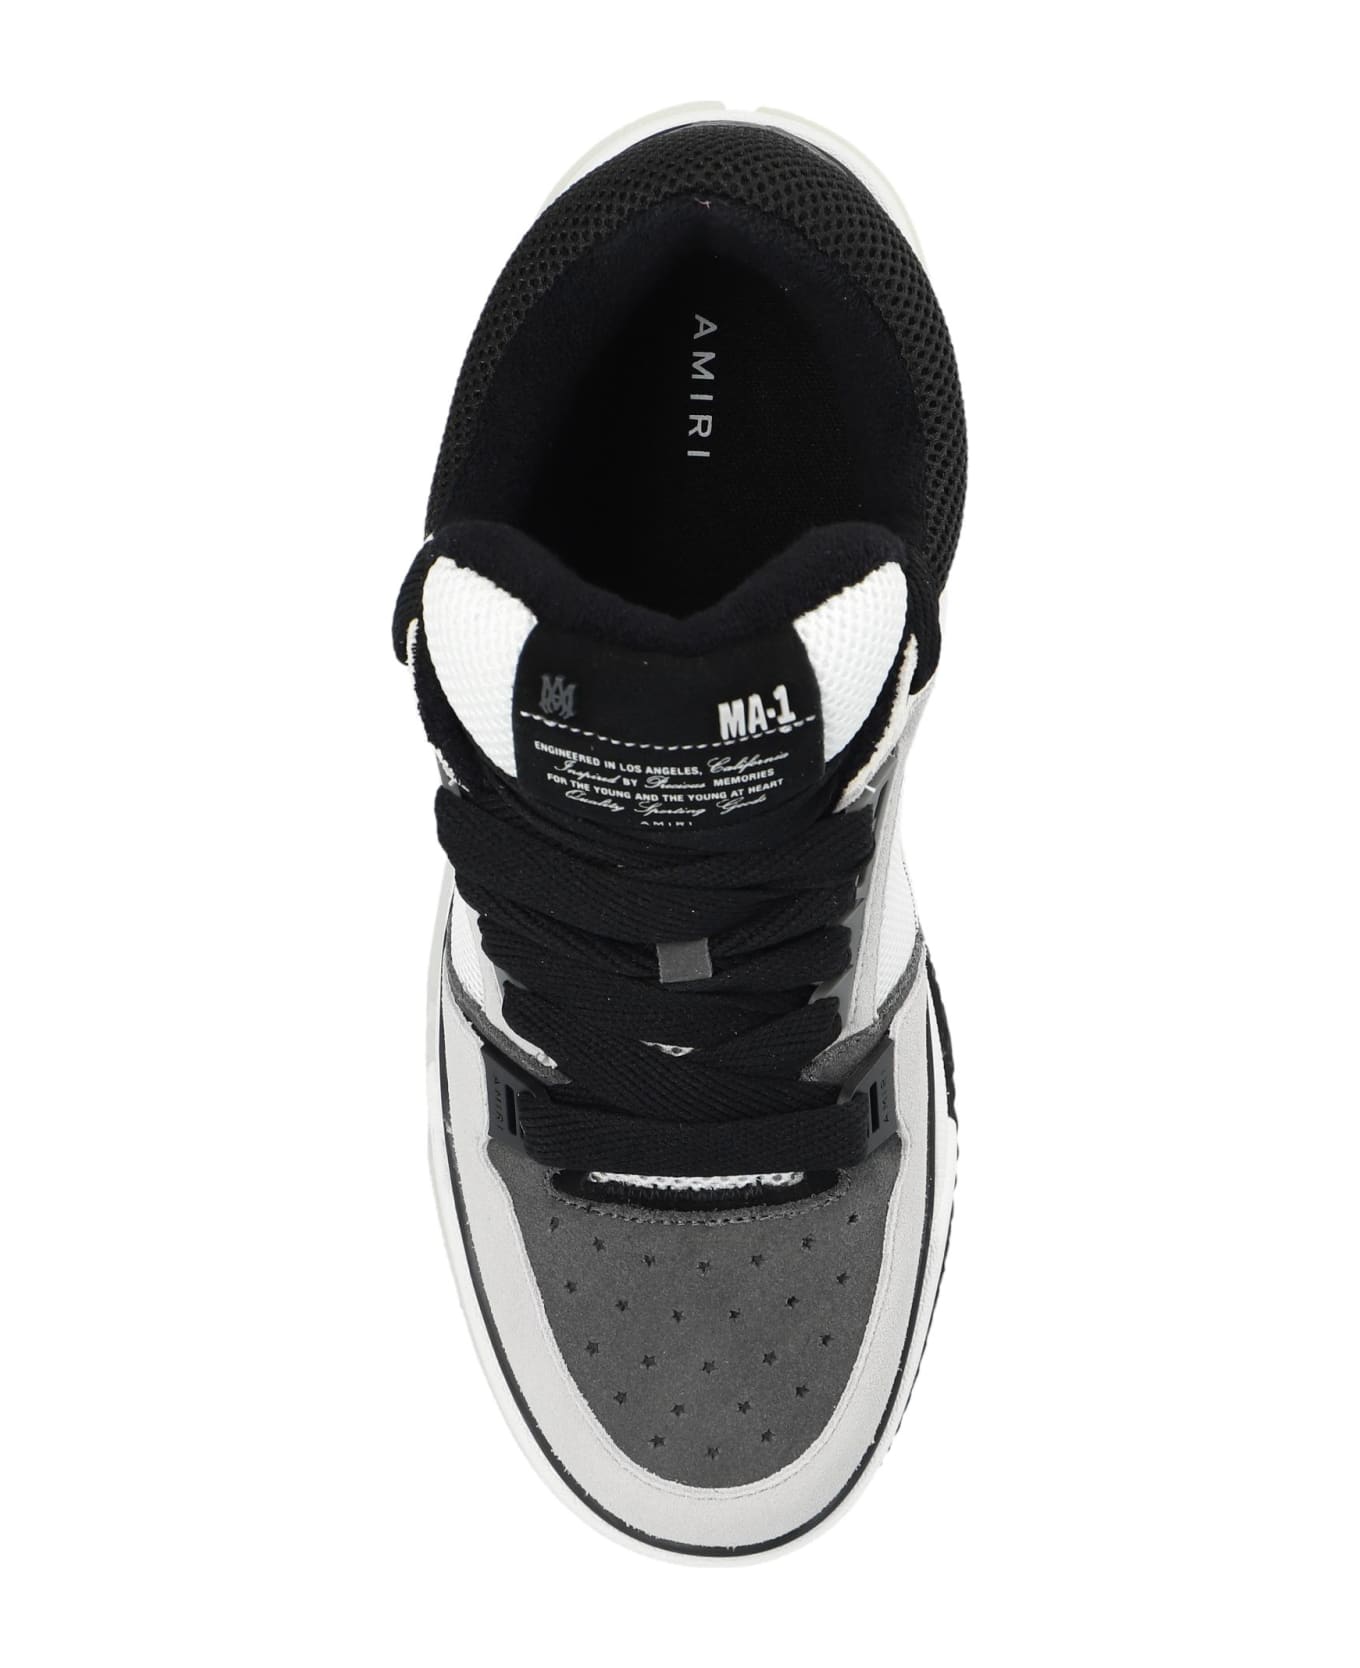 AMIRI 'ma-1' Sneakers - Black スニーカー